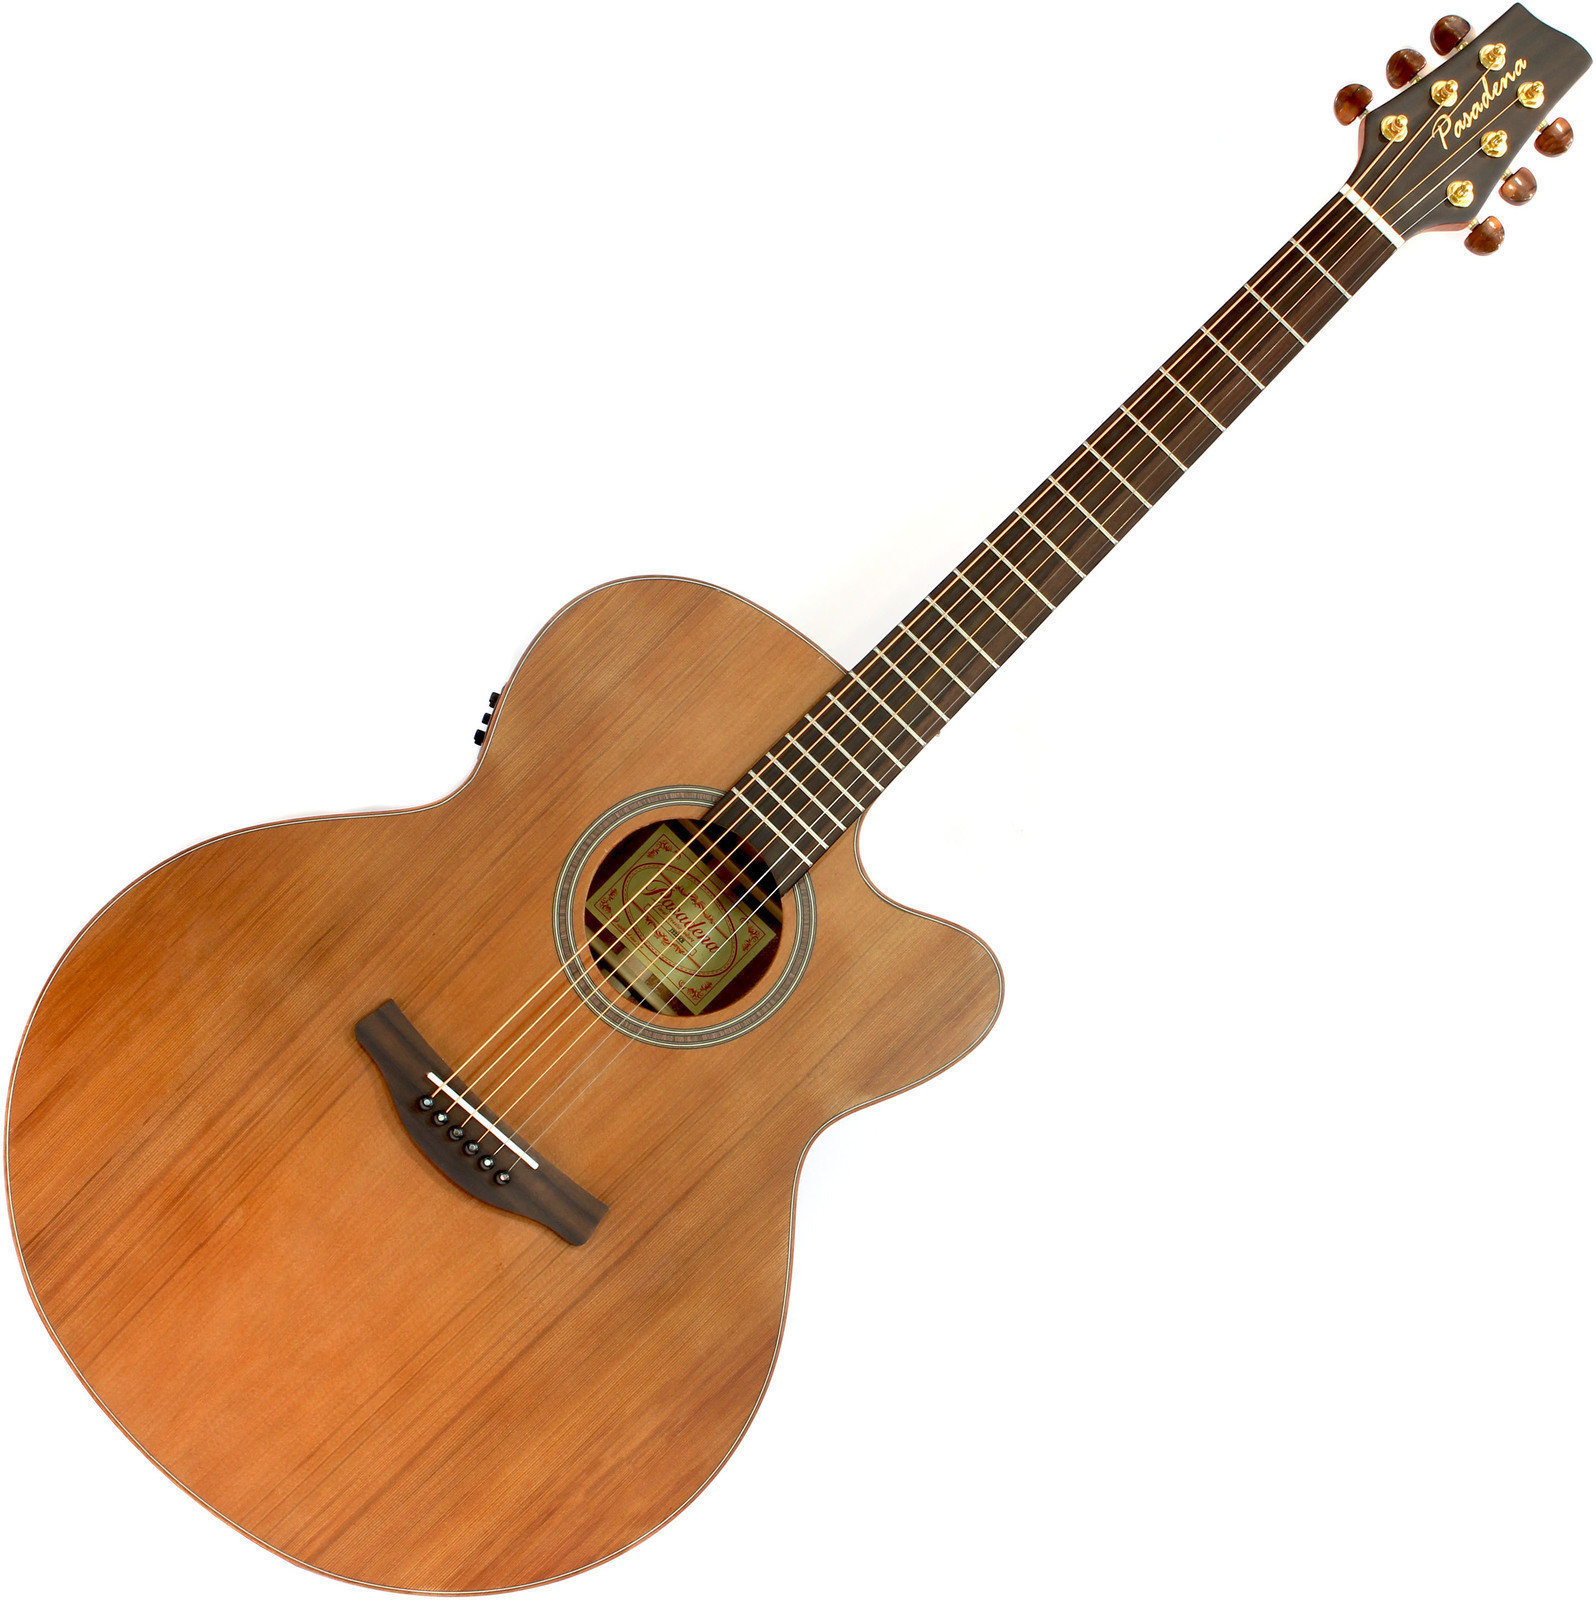 Jumbo elektro-akoestische gitaar Pasadena J222SCE